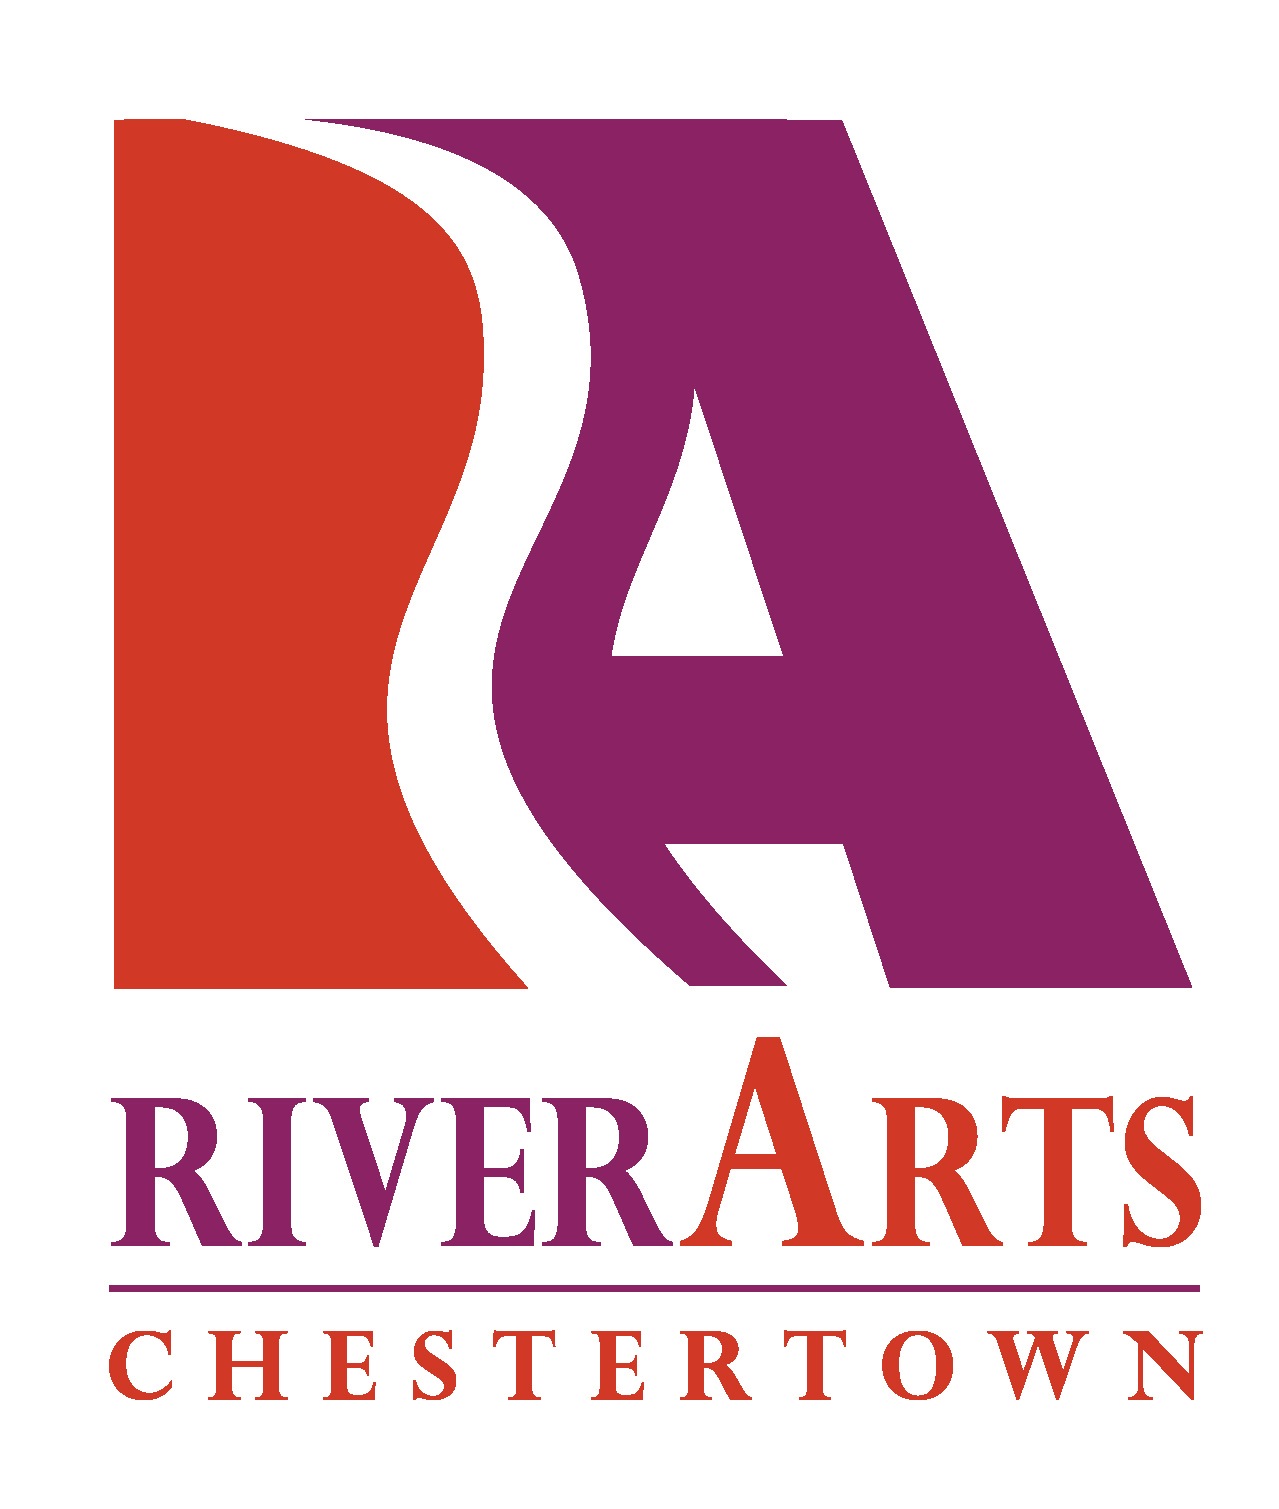 Chestertown RiverArts